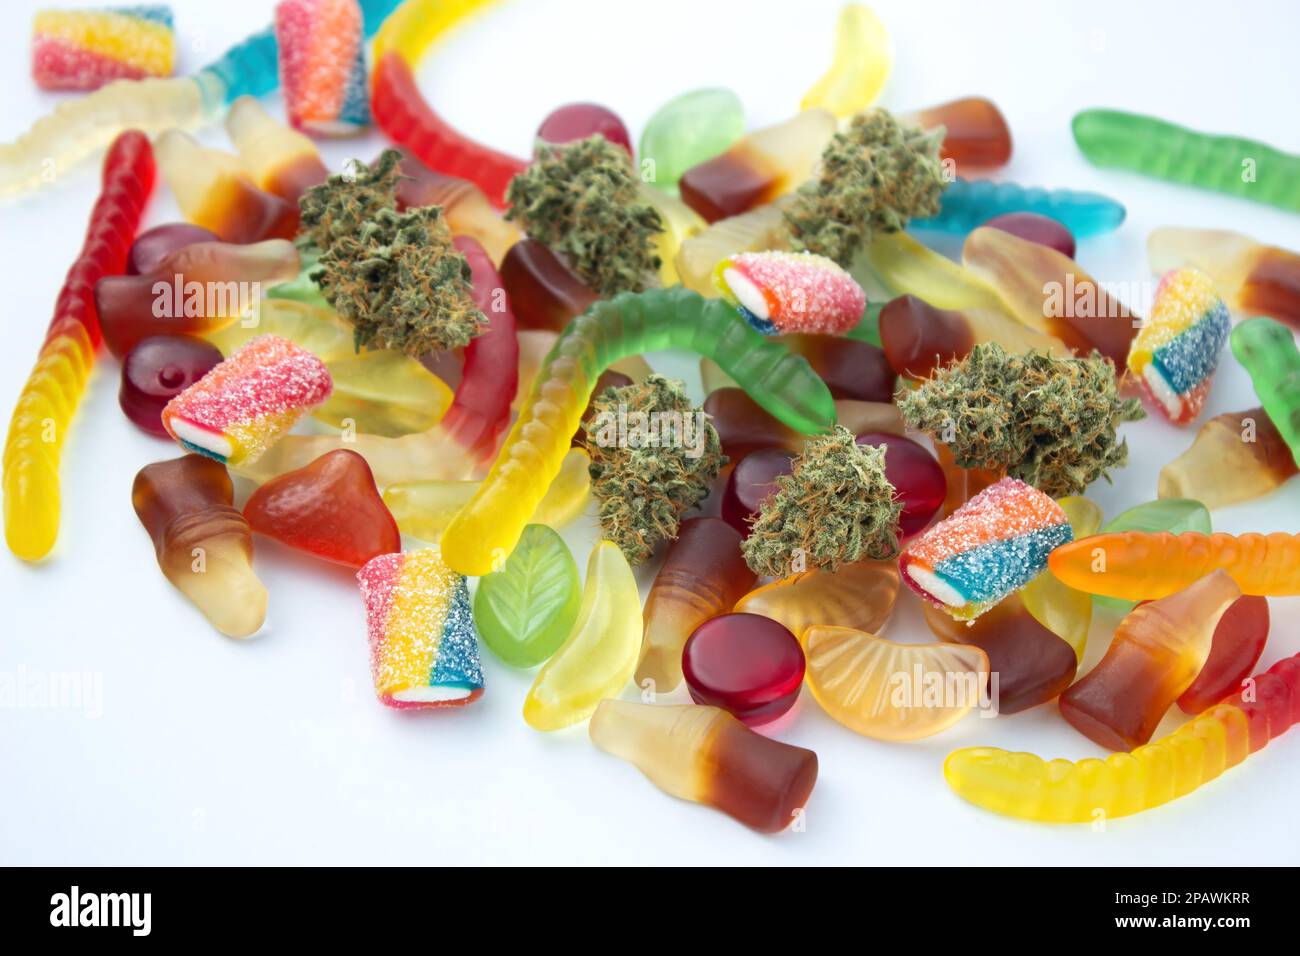 Getrocknete medizinische Marihuana-Knospen liegen zwischen Gummien verschiedener Formen und Geschmacksrichtungen. Auf einem kaltweißen Hintergrund Stockfoto